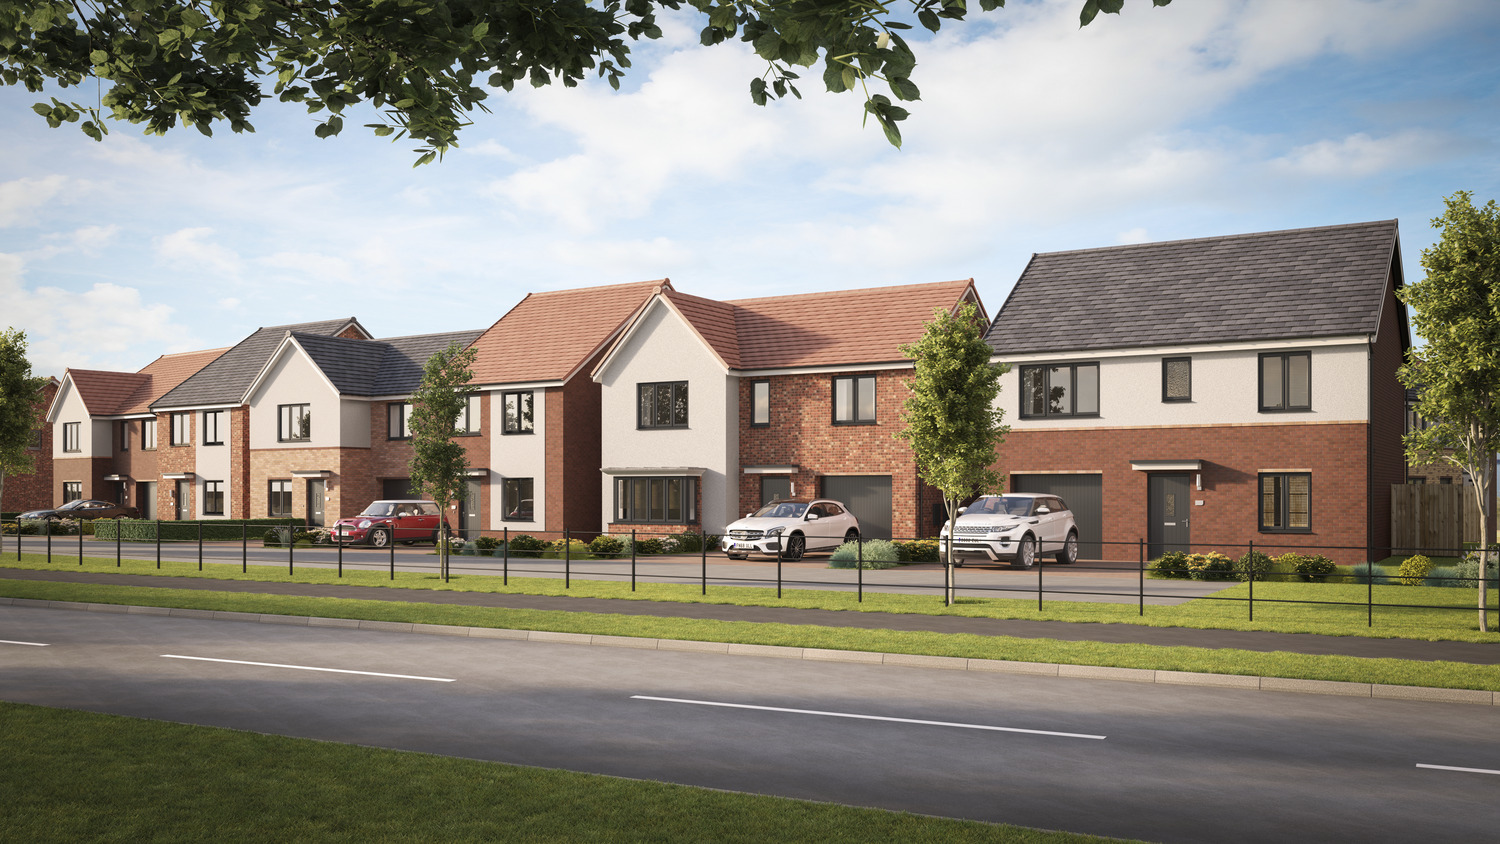 Avant homes £51m plan for 230 new homes in Netherburn